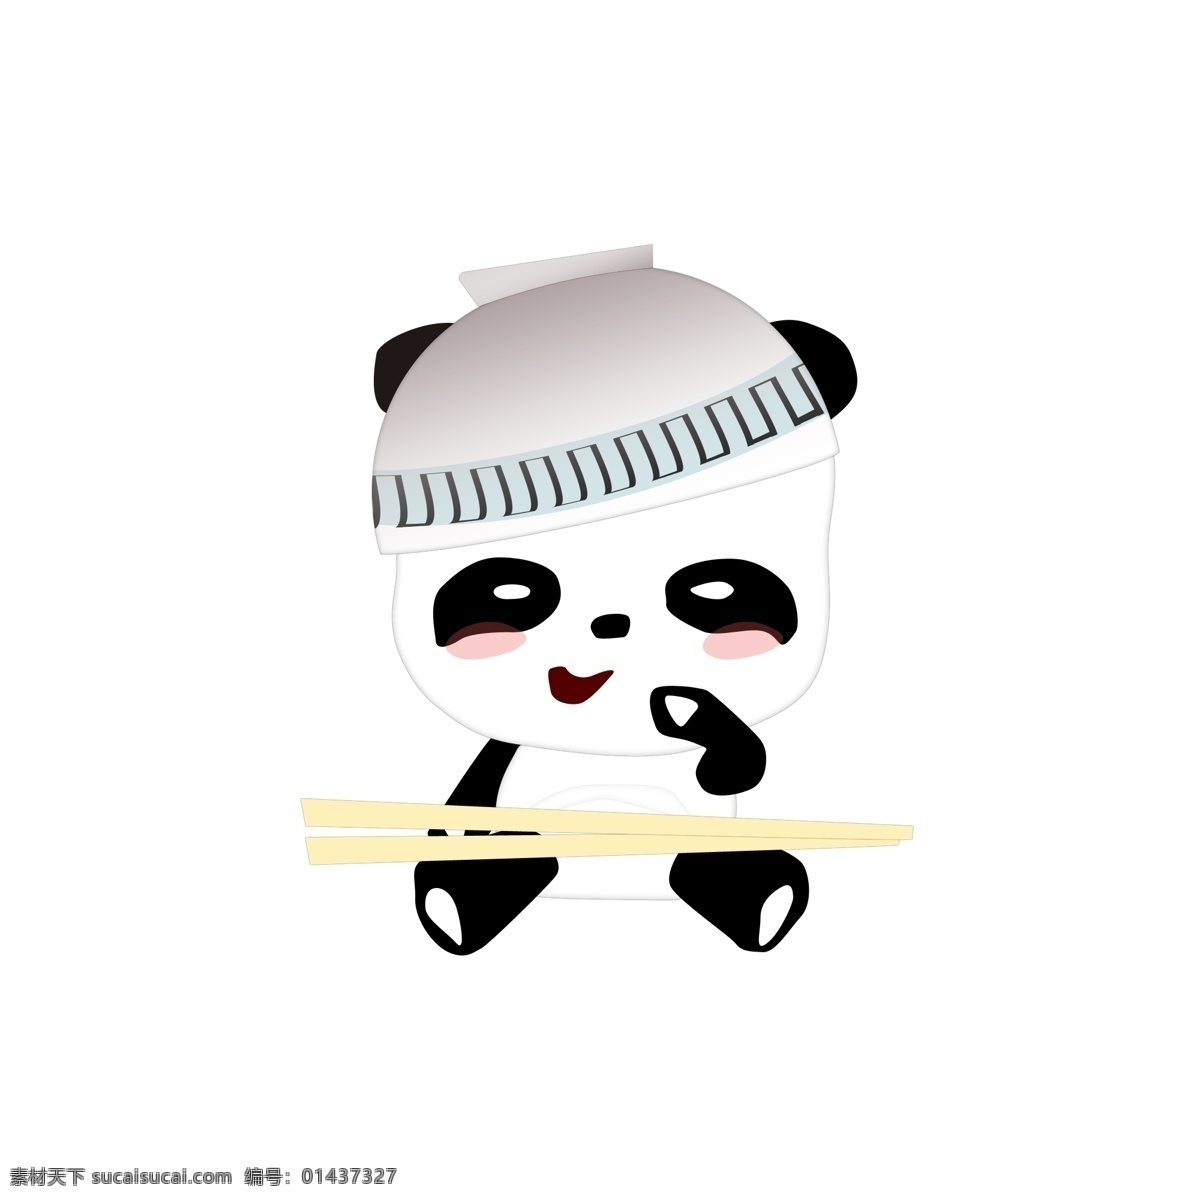 熊猫 logo 图标 可爱 萌 分层